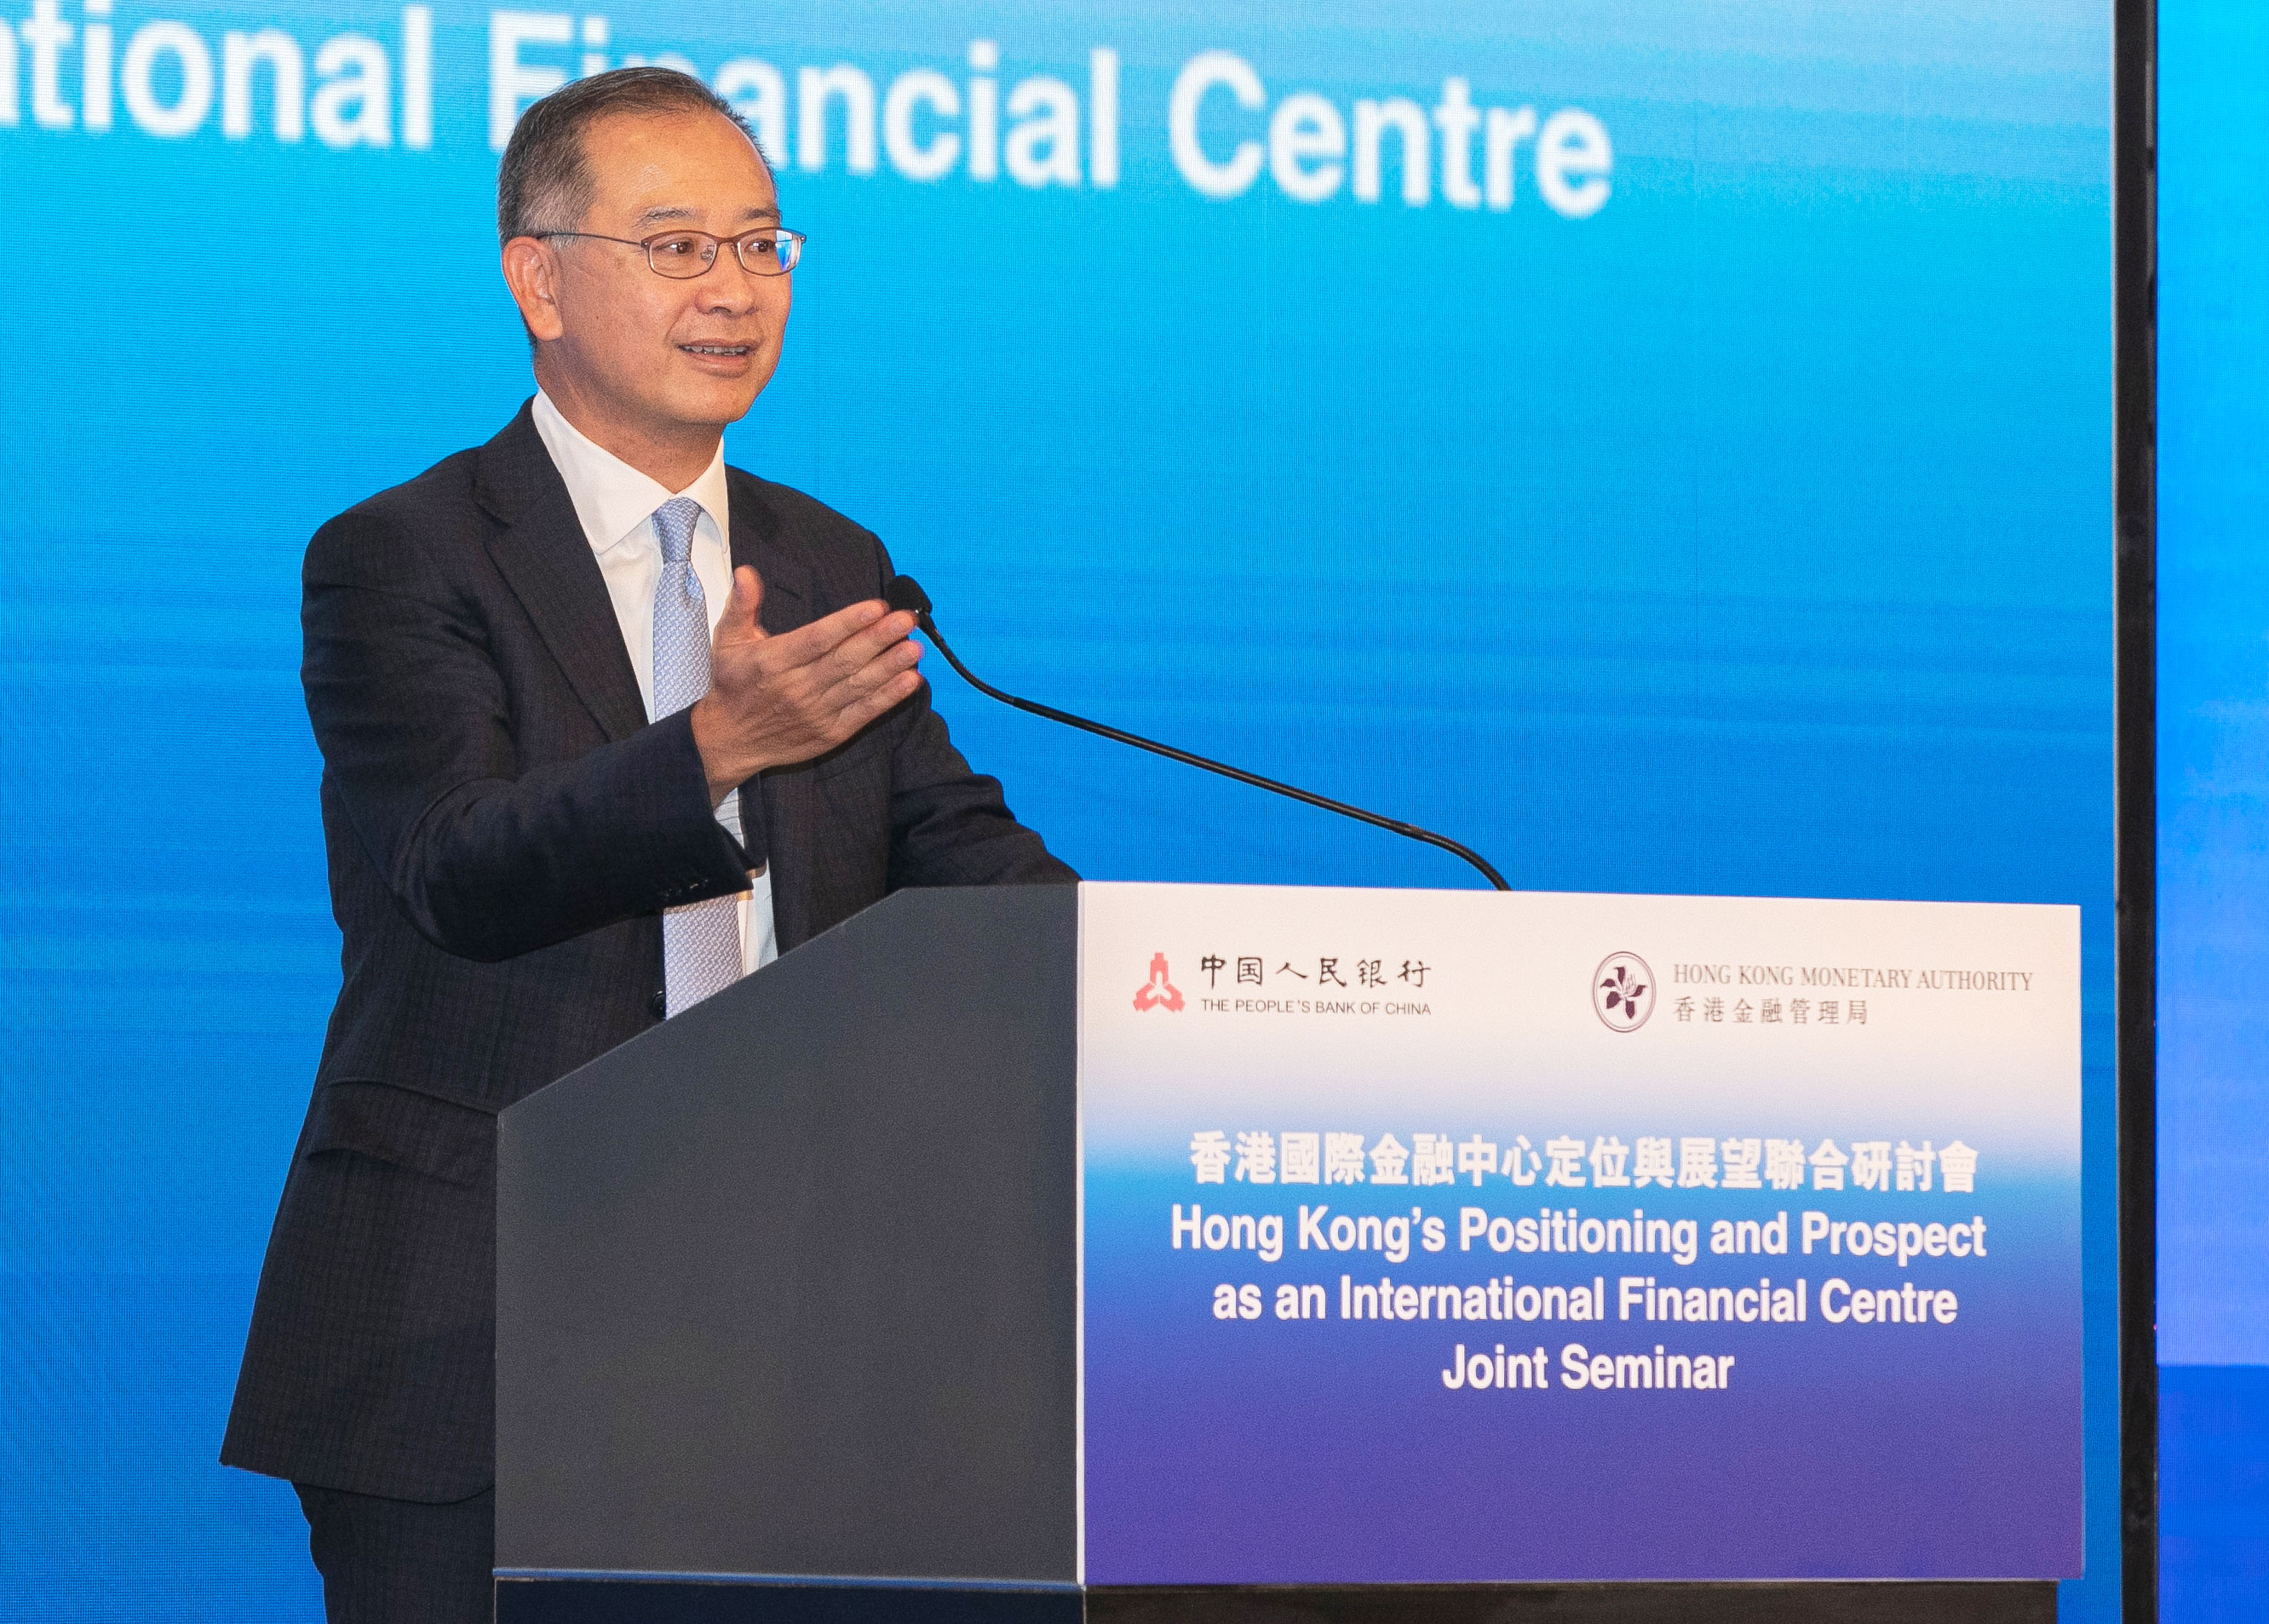 香港金融管理局總裁余偉文先生今日（12月9日）於「香港國際金融中心定位與展望」主題研討會致開幕辭時強調，作為全球領先的國際金融中心，香港會善用獨特優勢，在多個金融領域不斷尋求新的突破和發展。